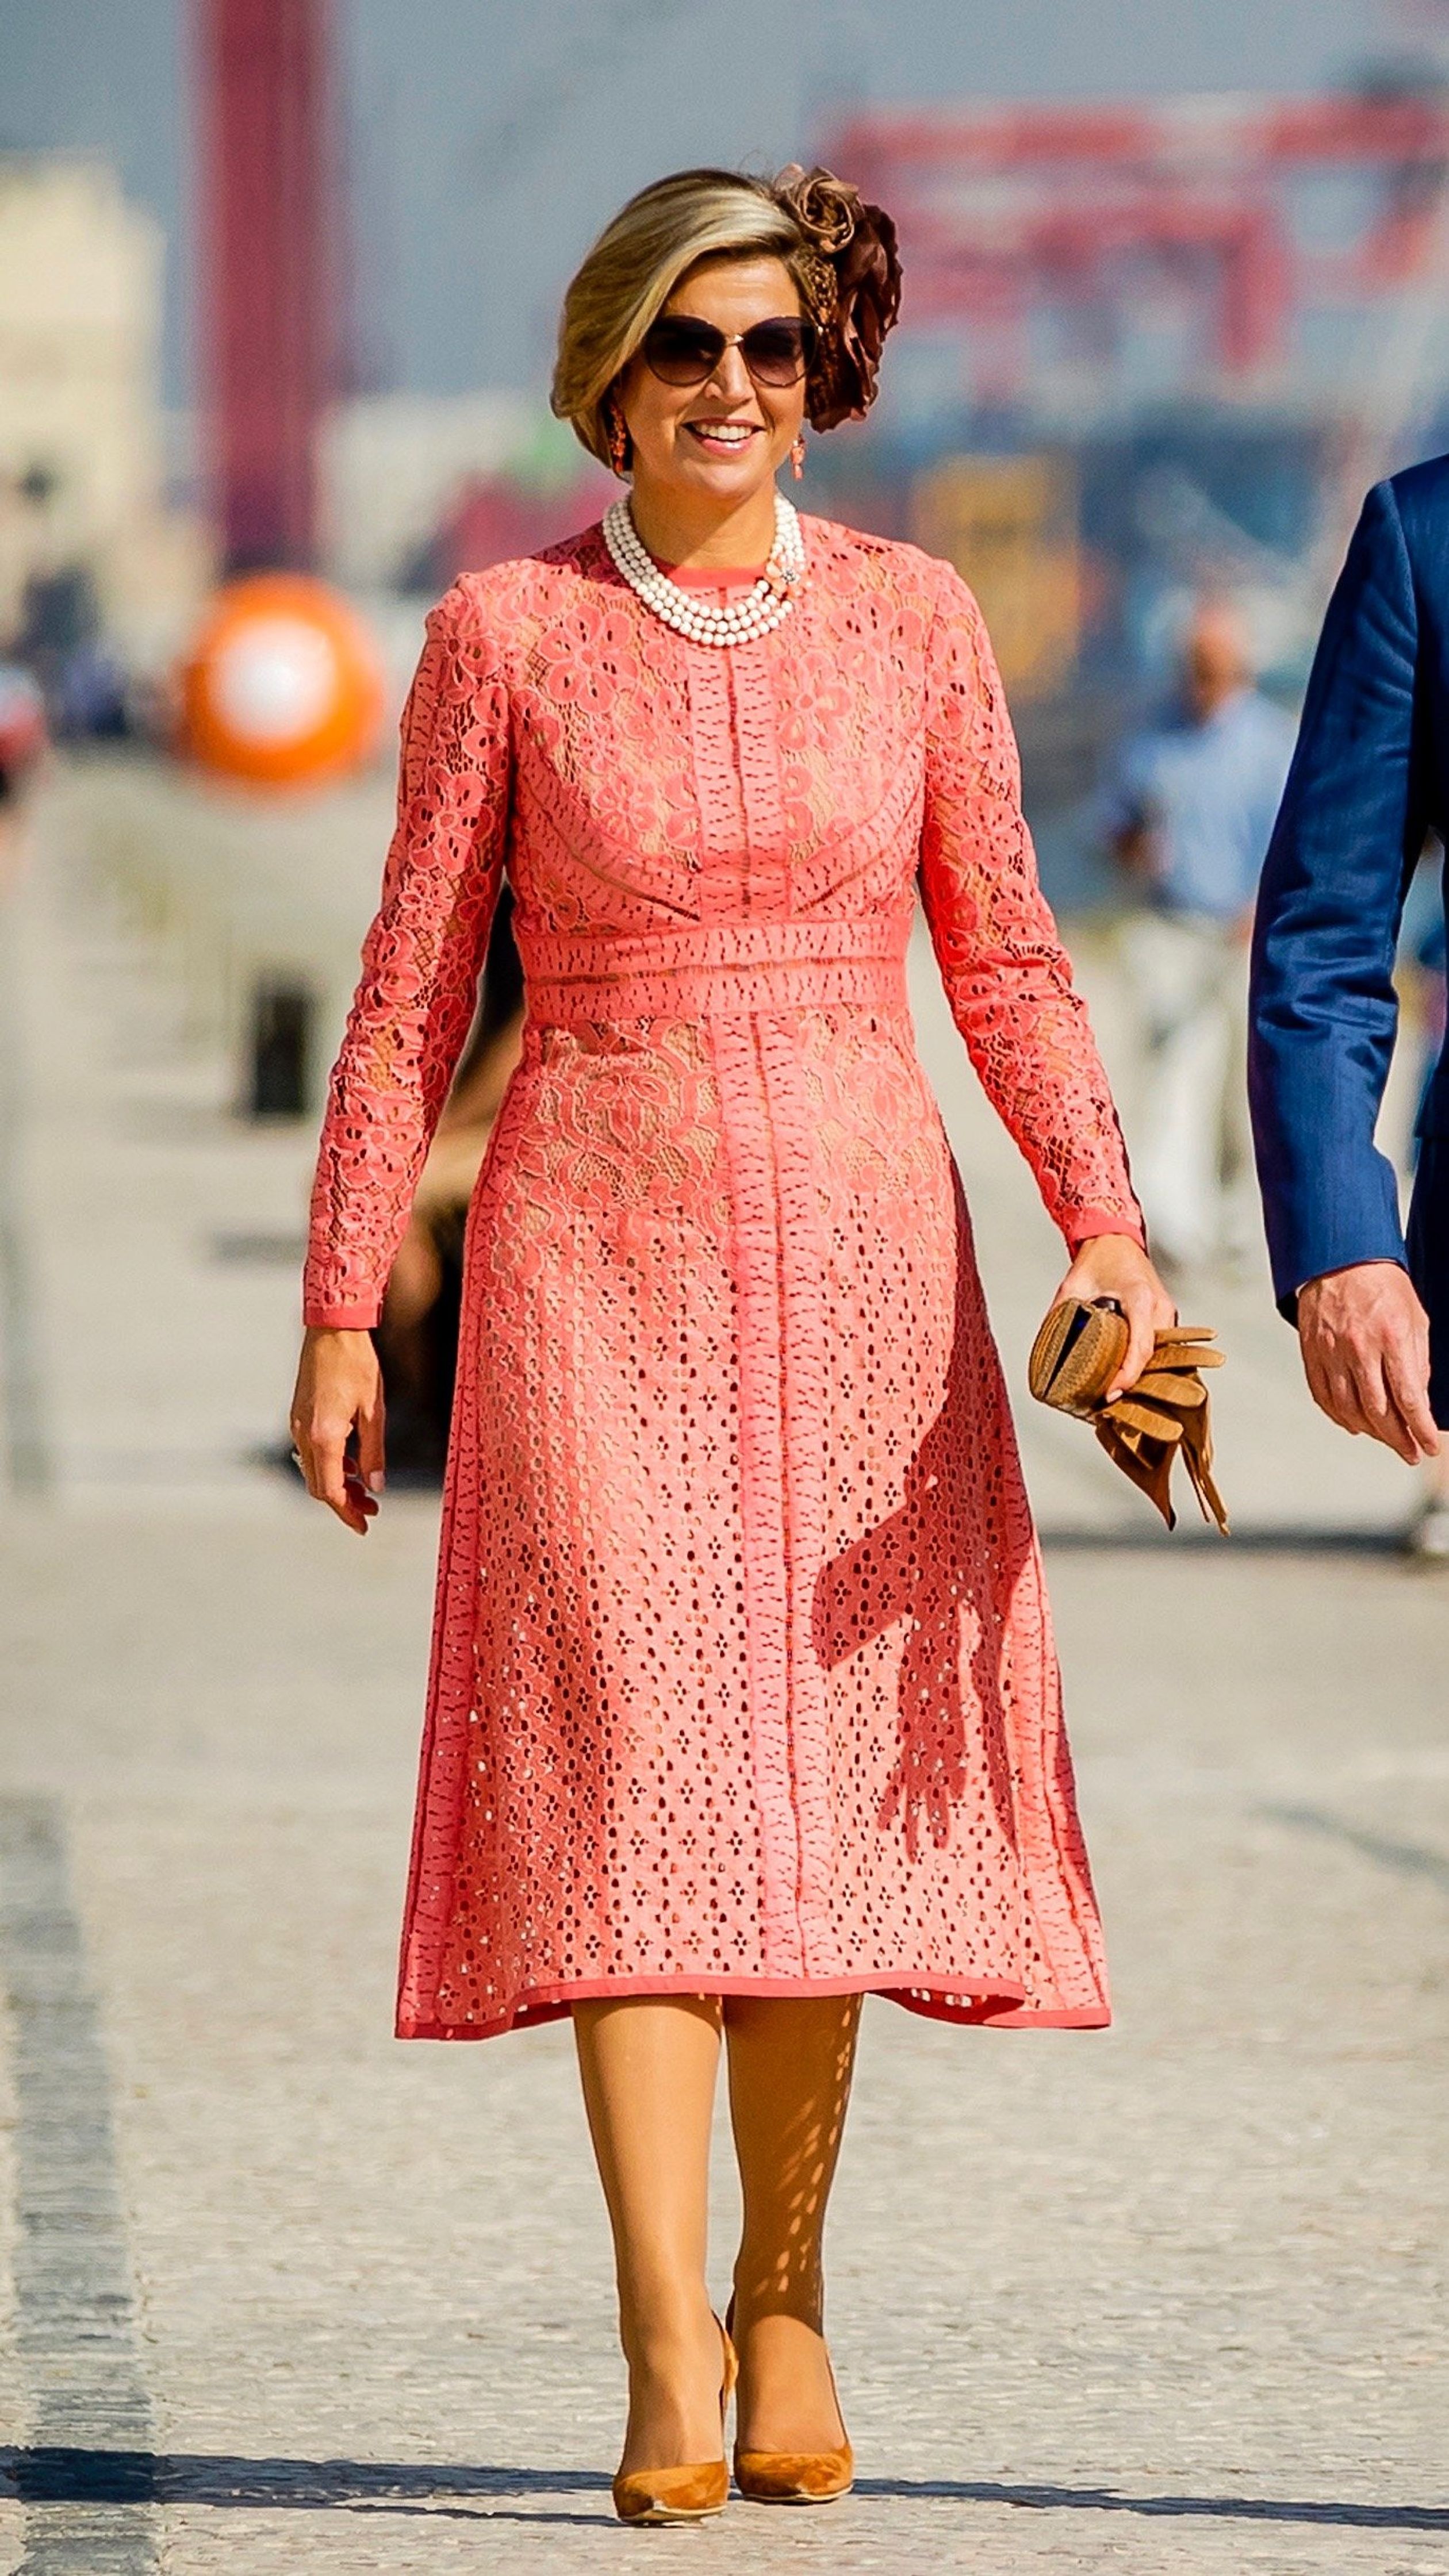 Leuk weetje: Kroonprinses Victoria van Zweden heeft deze koraalkleurige jurk van de Libanese